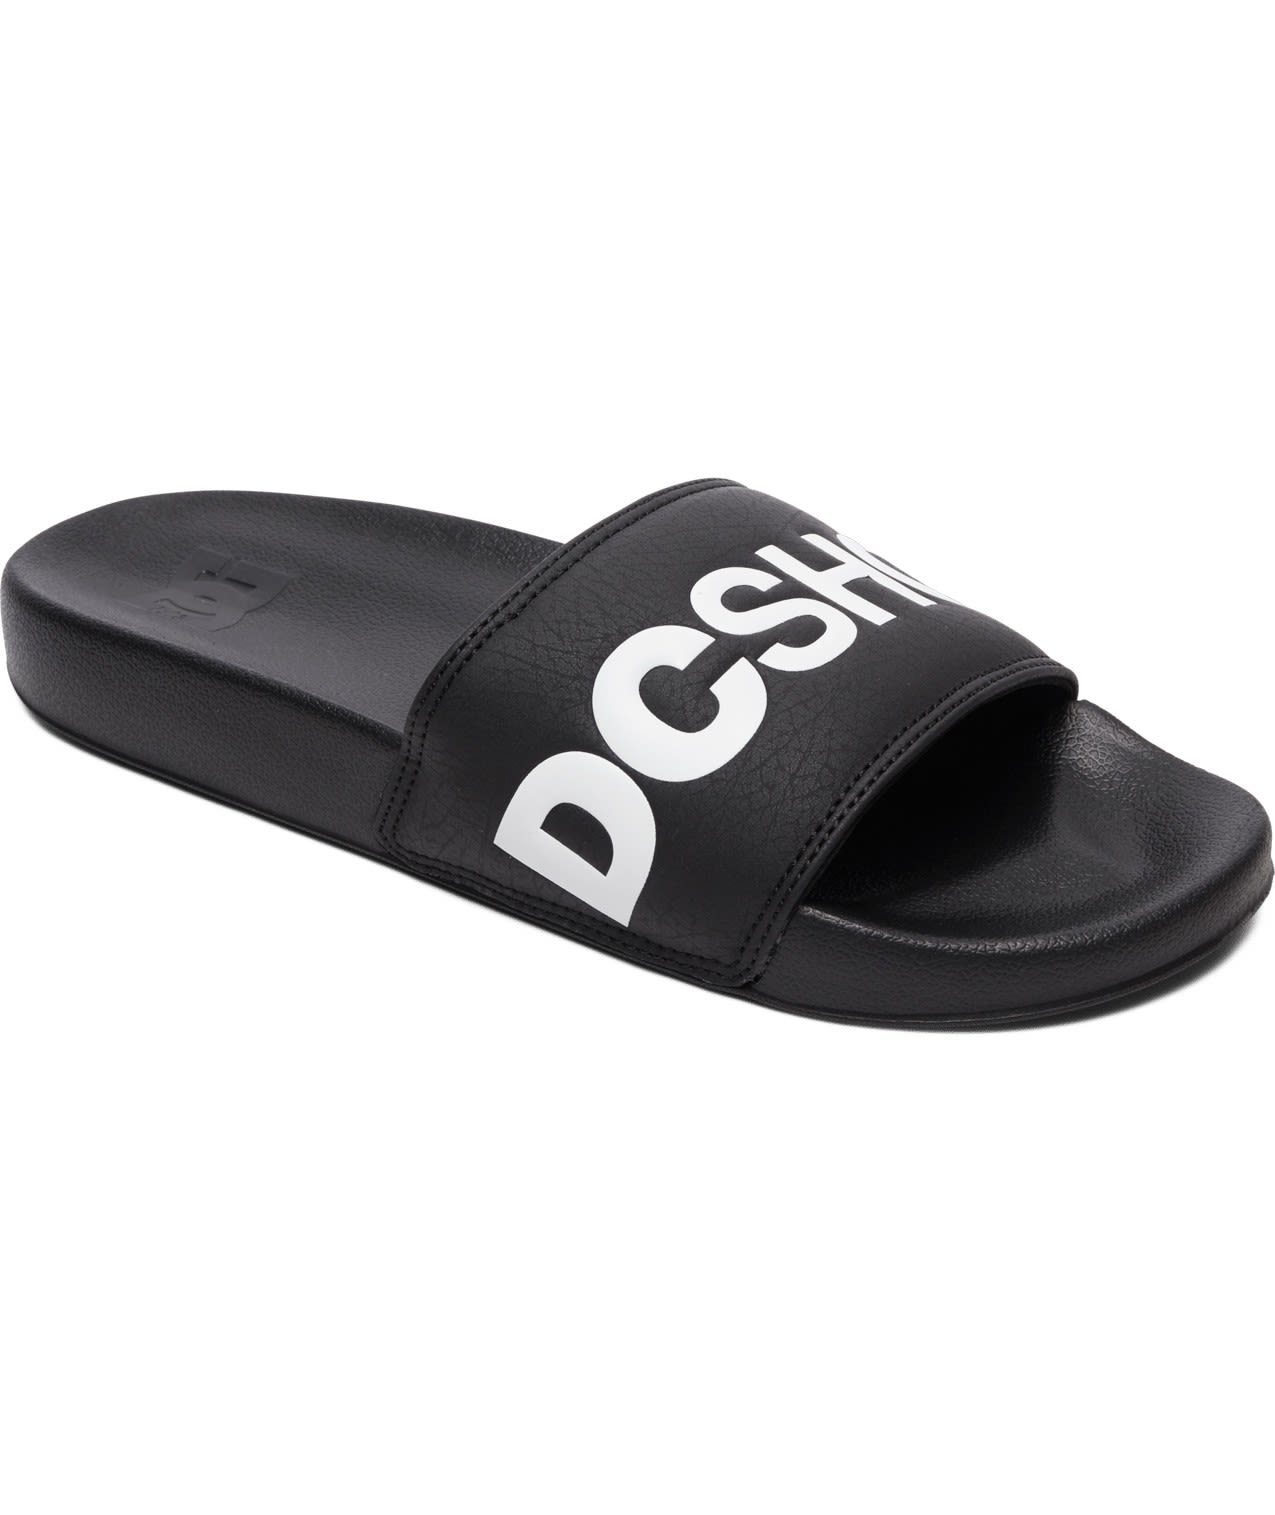 DC Shoes Dc M Dc schwarz Sandale Herren Sandal Badesandale Slide